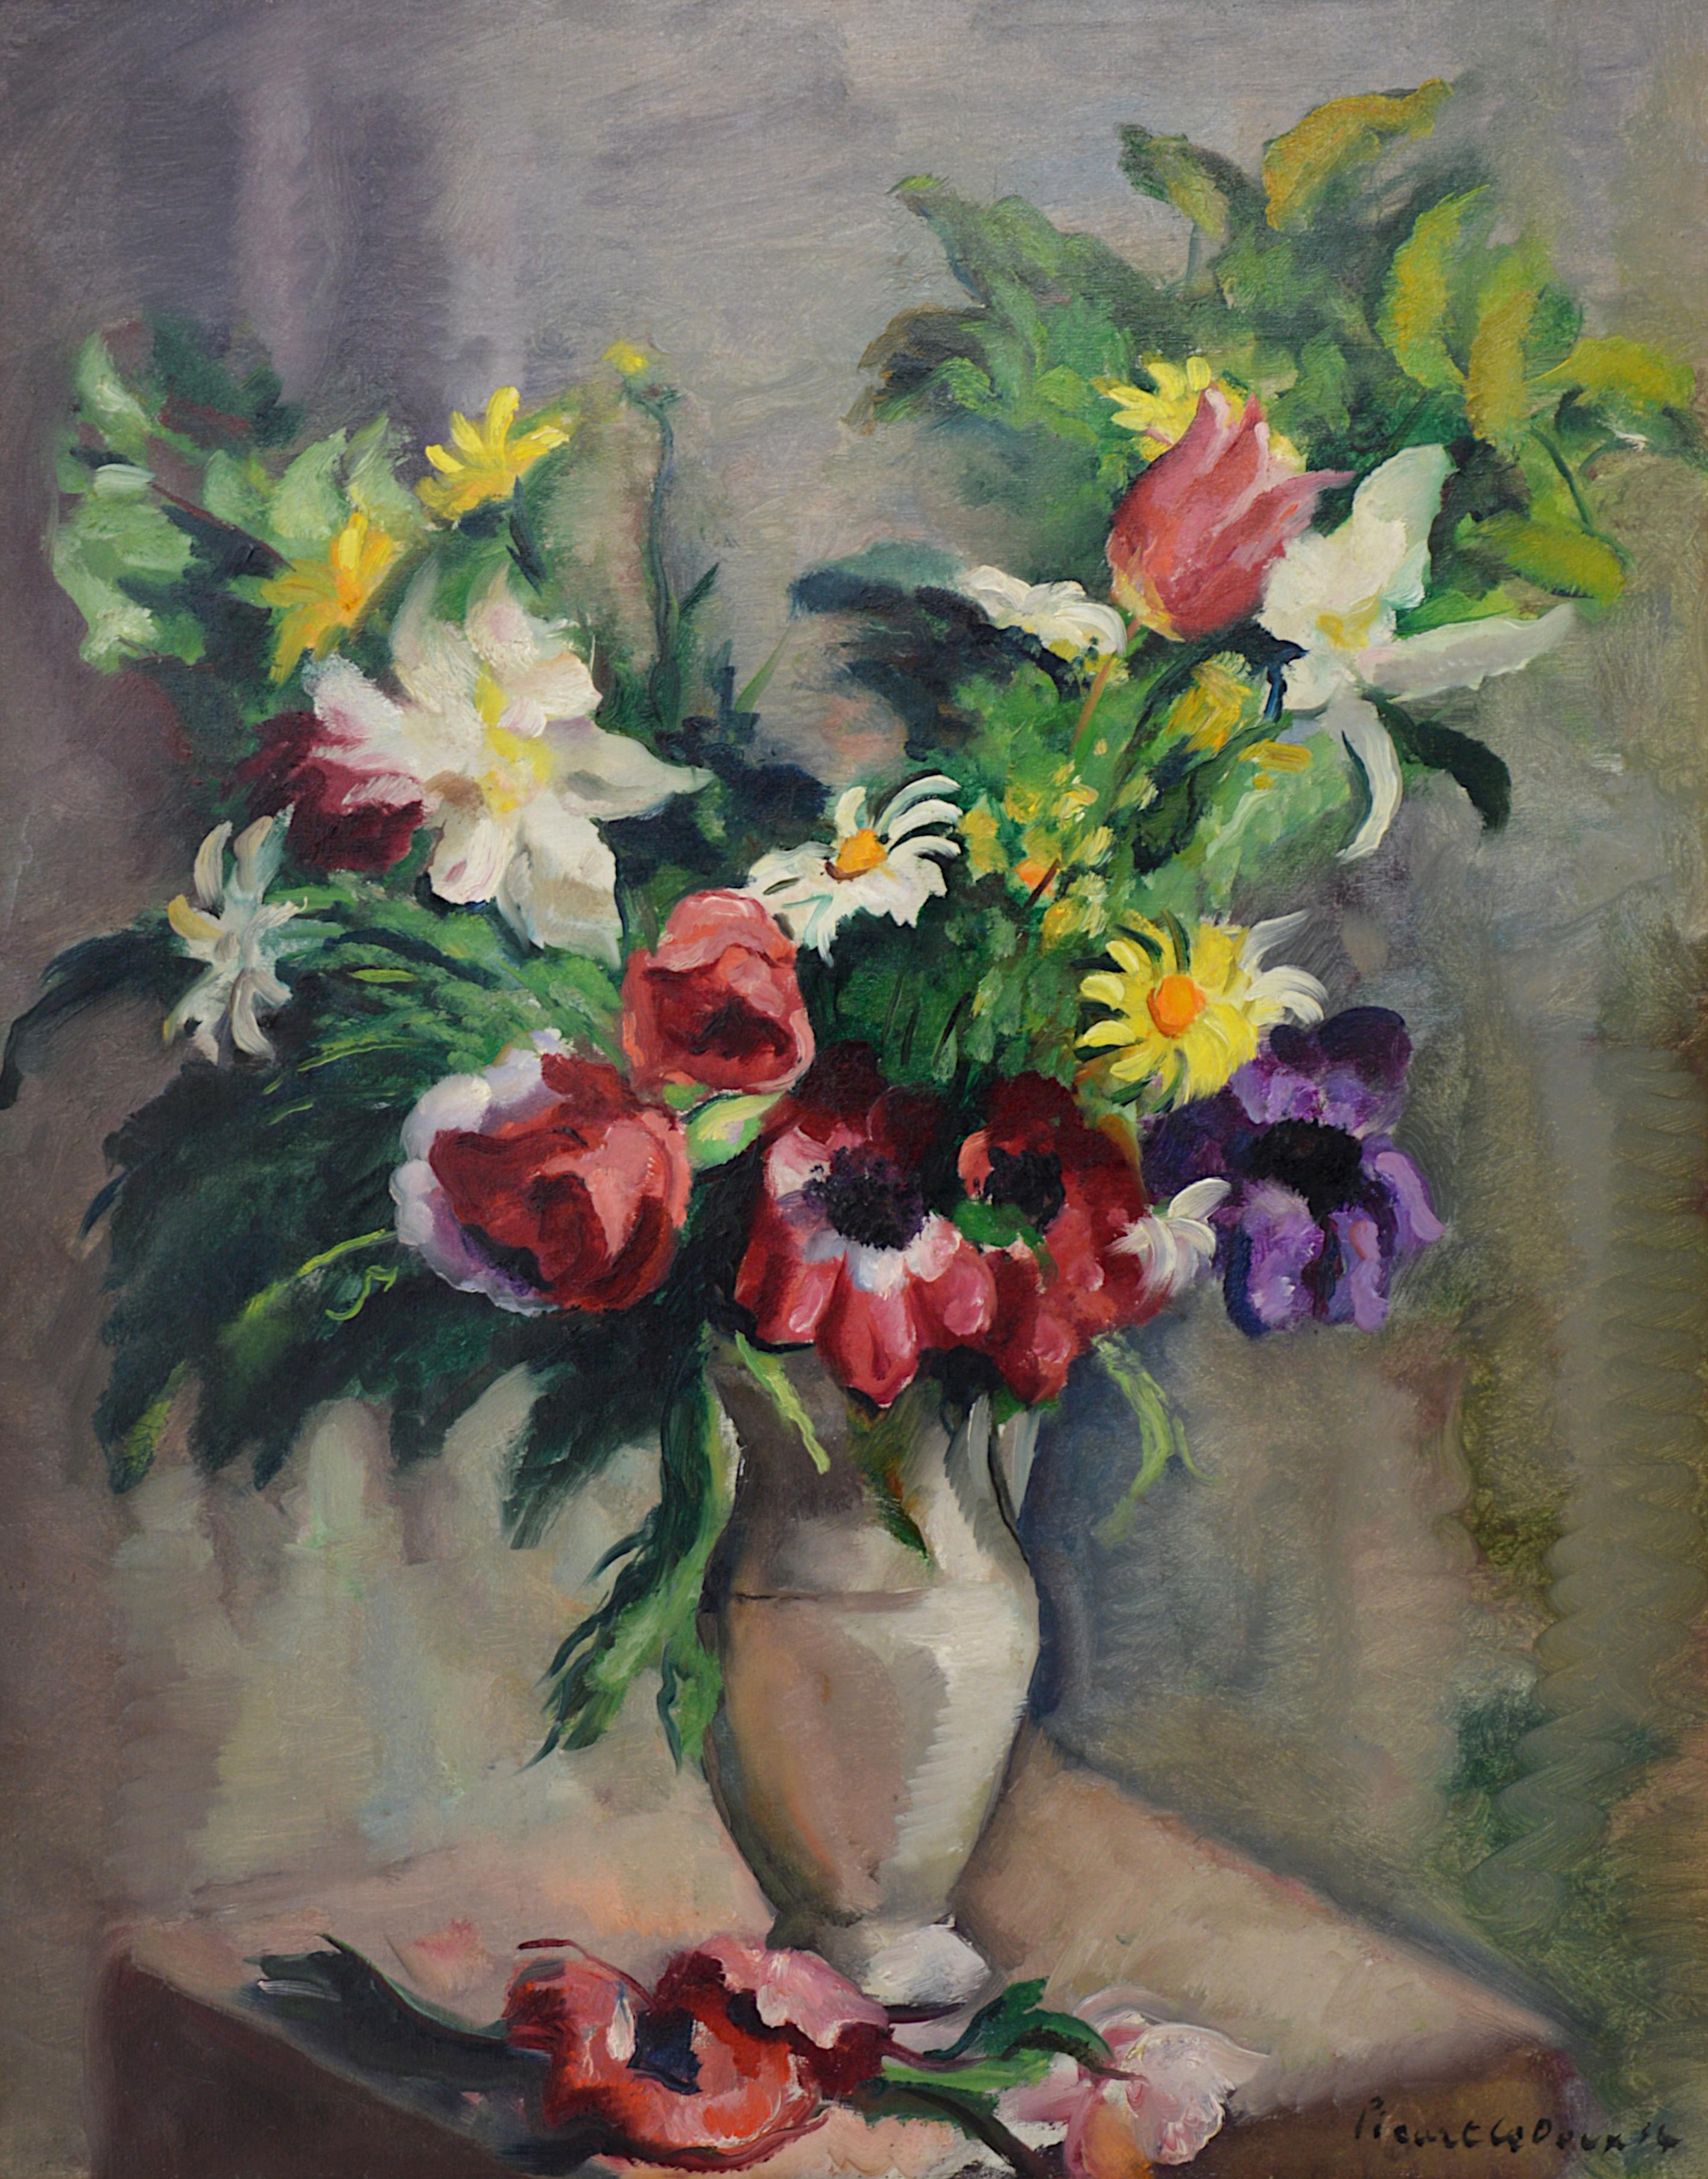 Charles PICART LE DOUX, Blumenstrauß mit Wildblumen, 1934 – Painting von Charles Picart le Doux